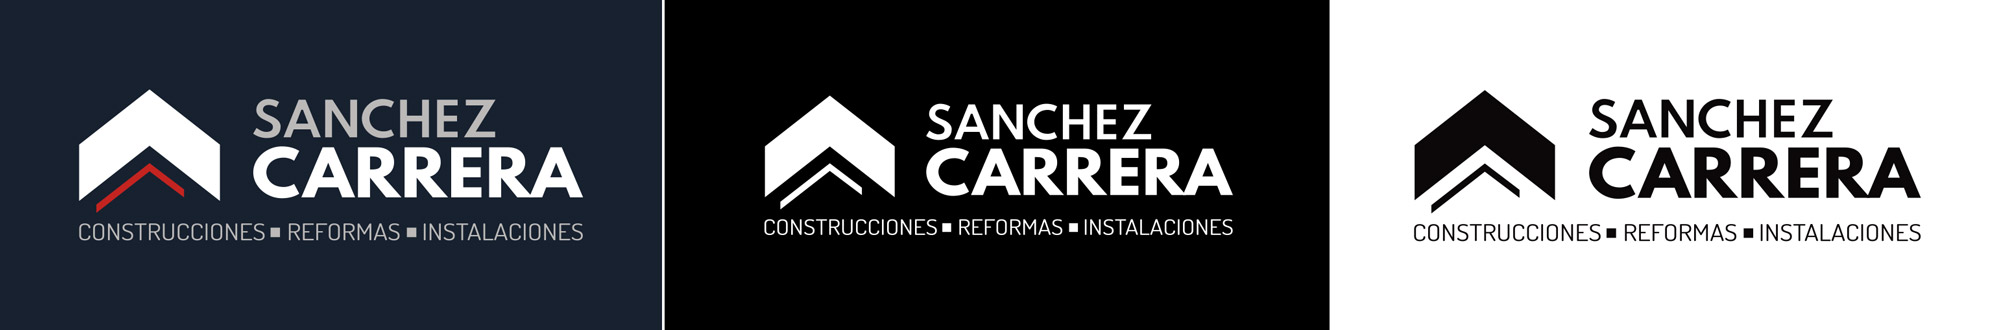 Sanchez Carrera - logotipo versiones